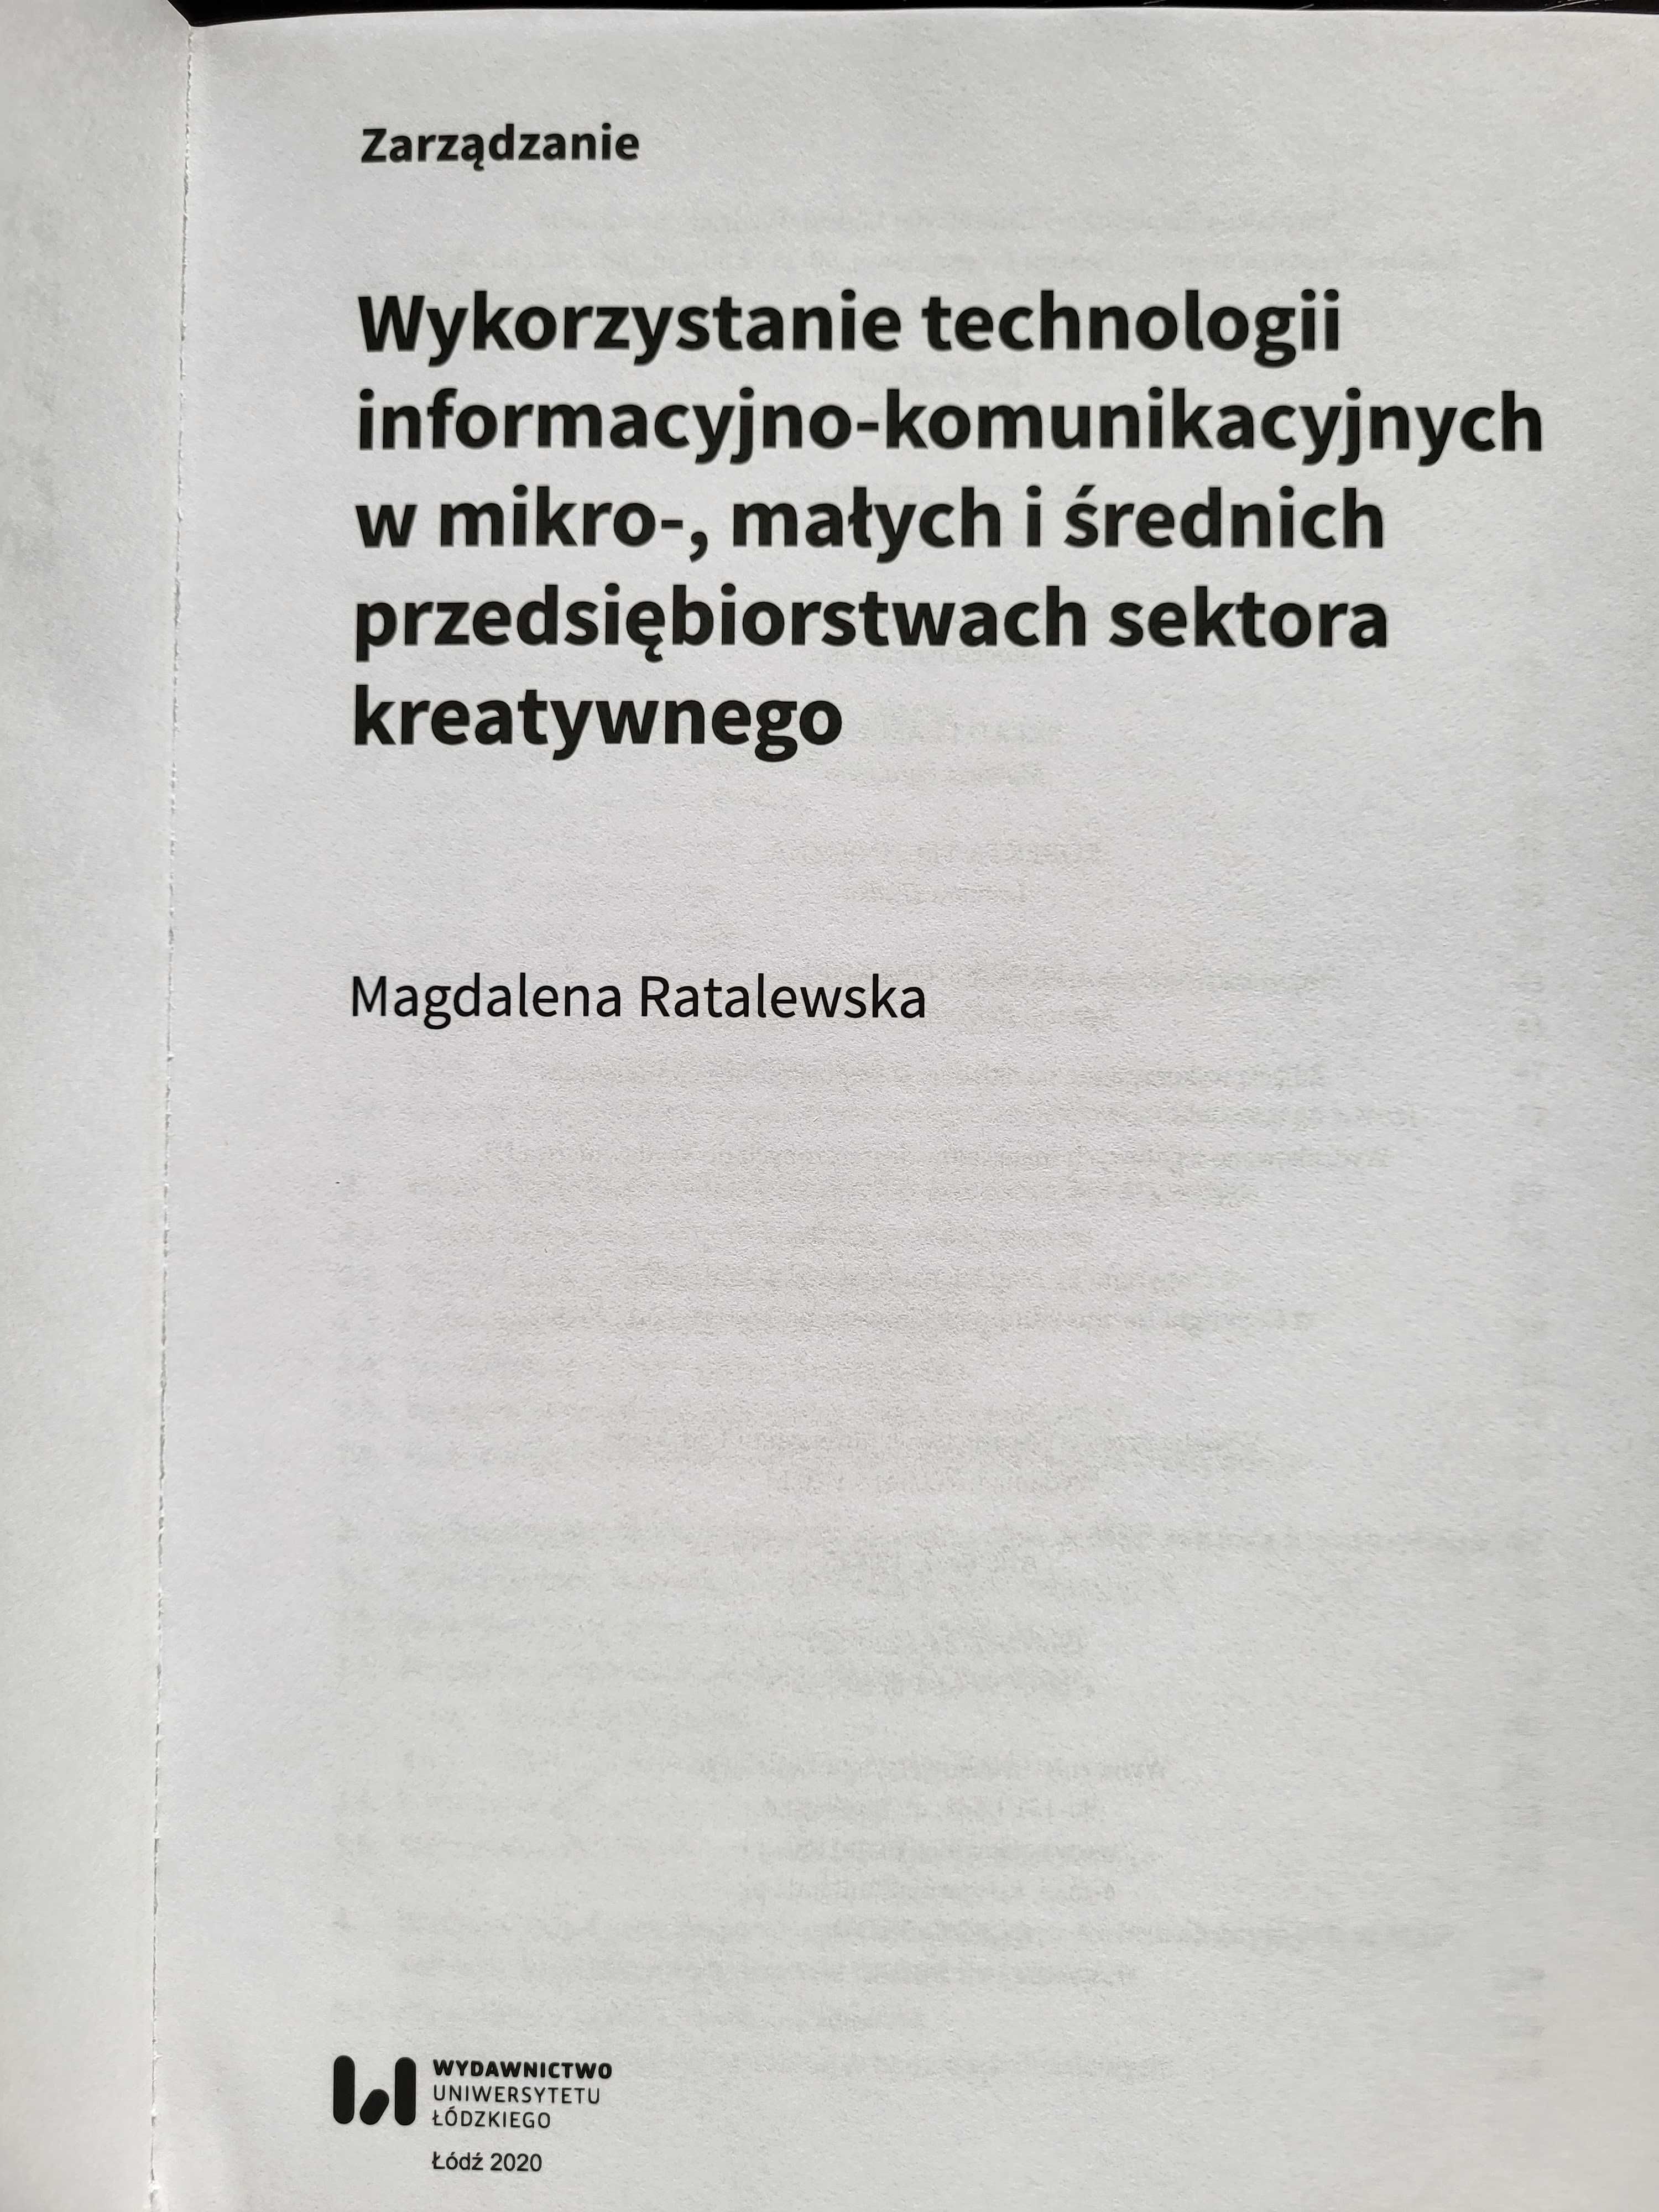 Ratalewska Wykorzystanie technologii informacyjno-komunikacyjnych...